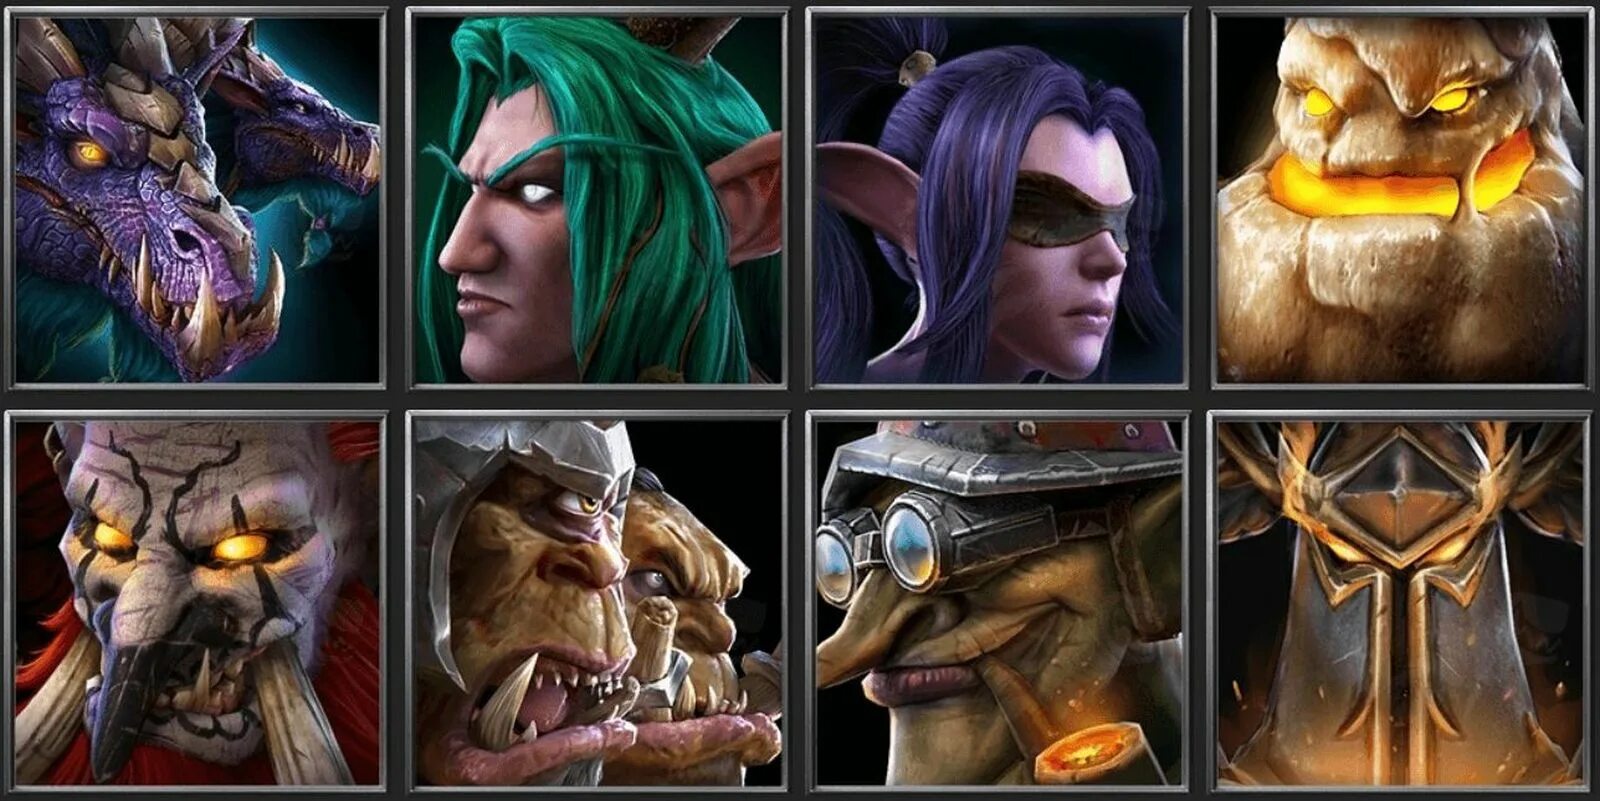 Warcraft 3 all star league. Герои из варкрафта 3. Герои варкрафт 3 персонажи. Warcraft 3 Reforged герои. Варкрафт иконки героев.